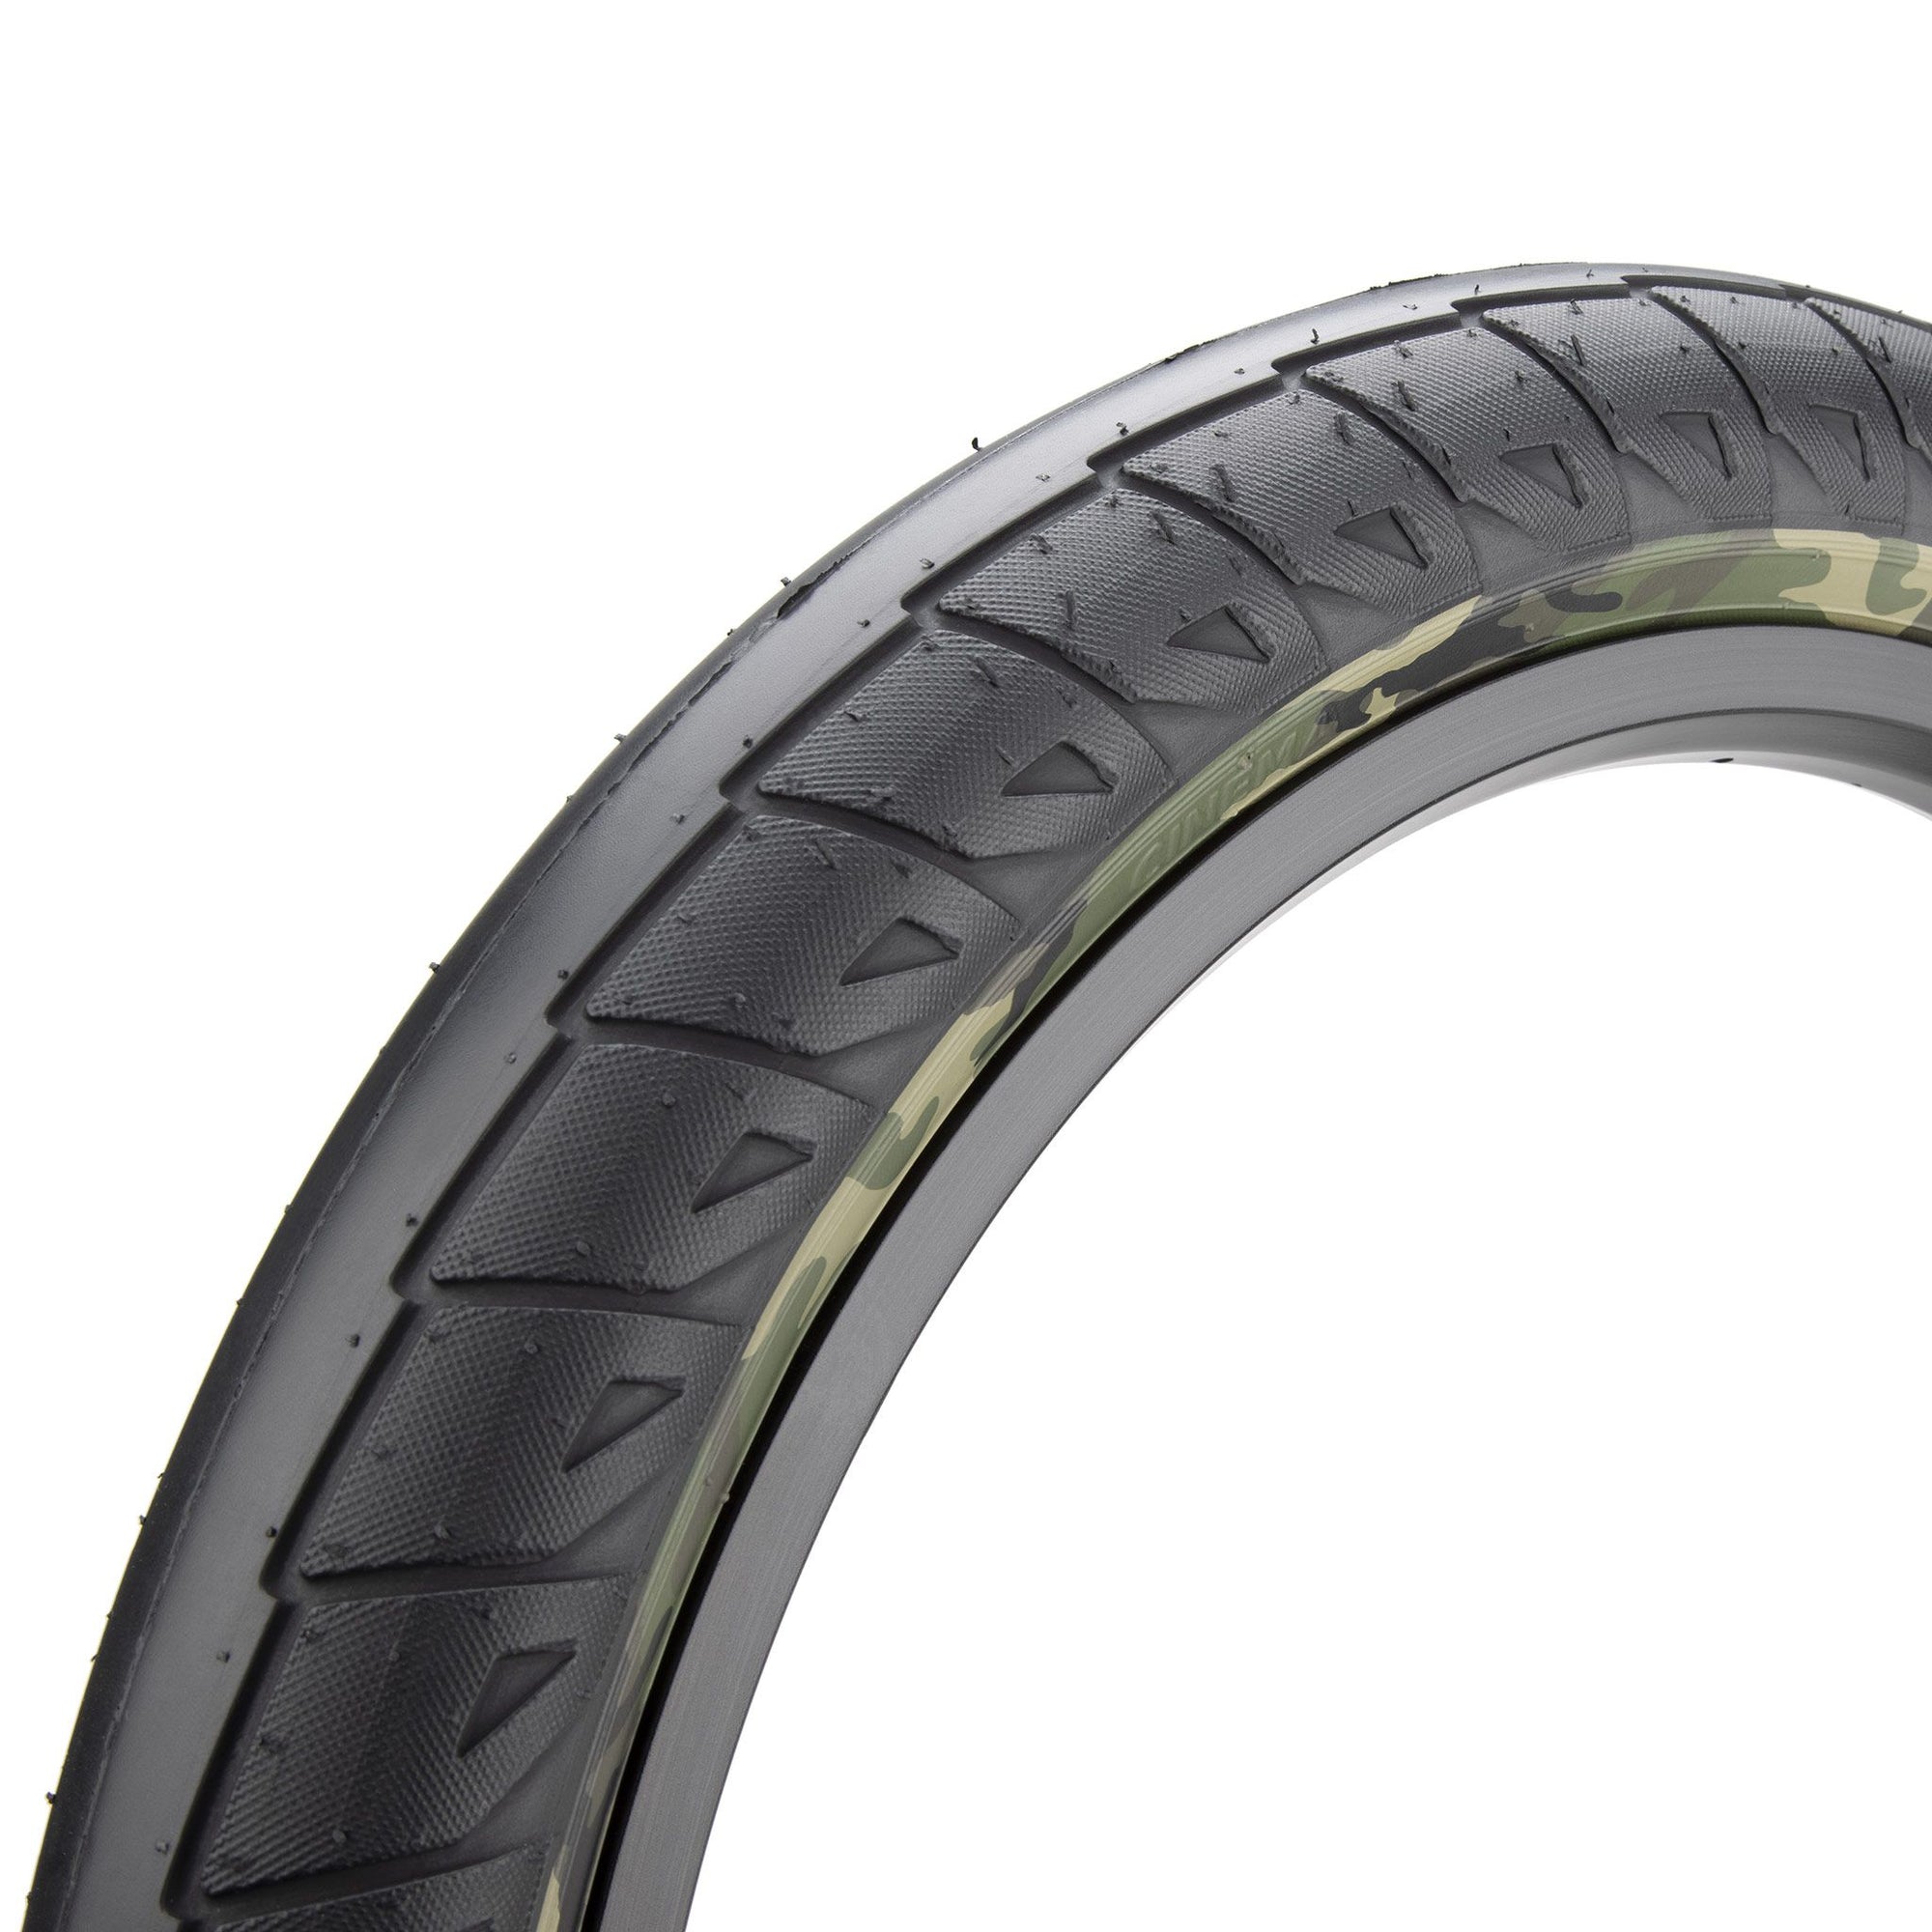 20x2.50 Cinema Williams BMX tire - Black w/ Camo Sidewall